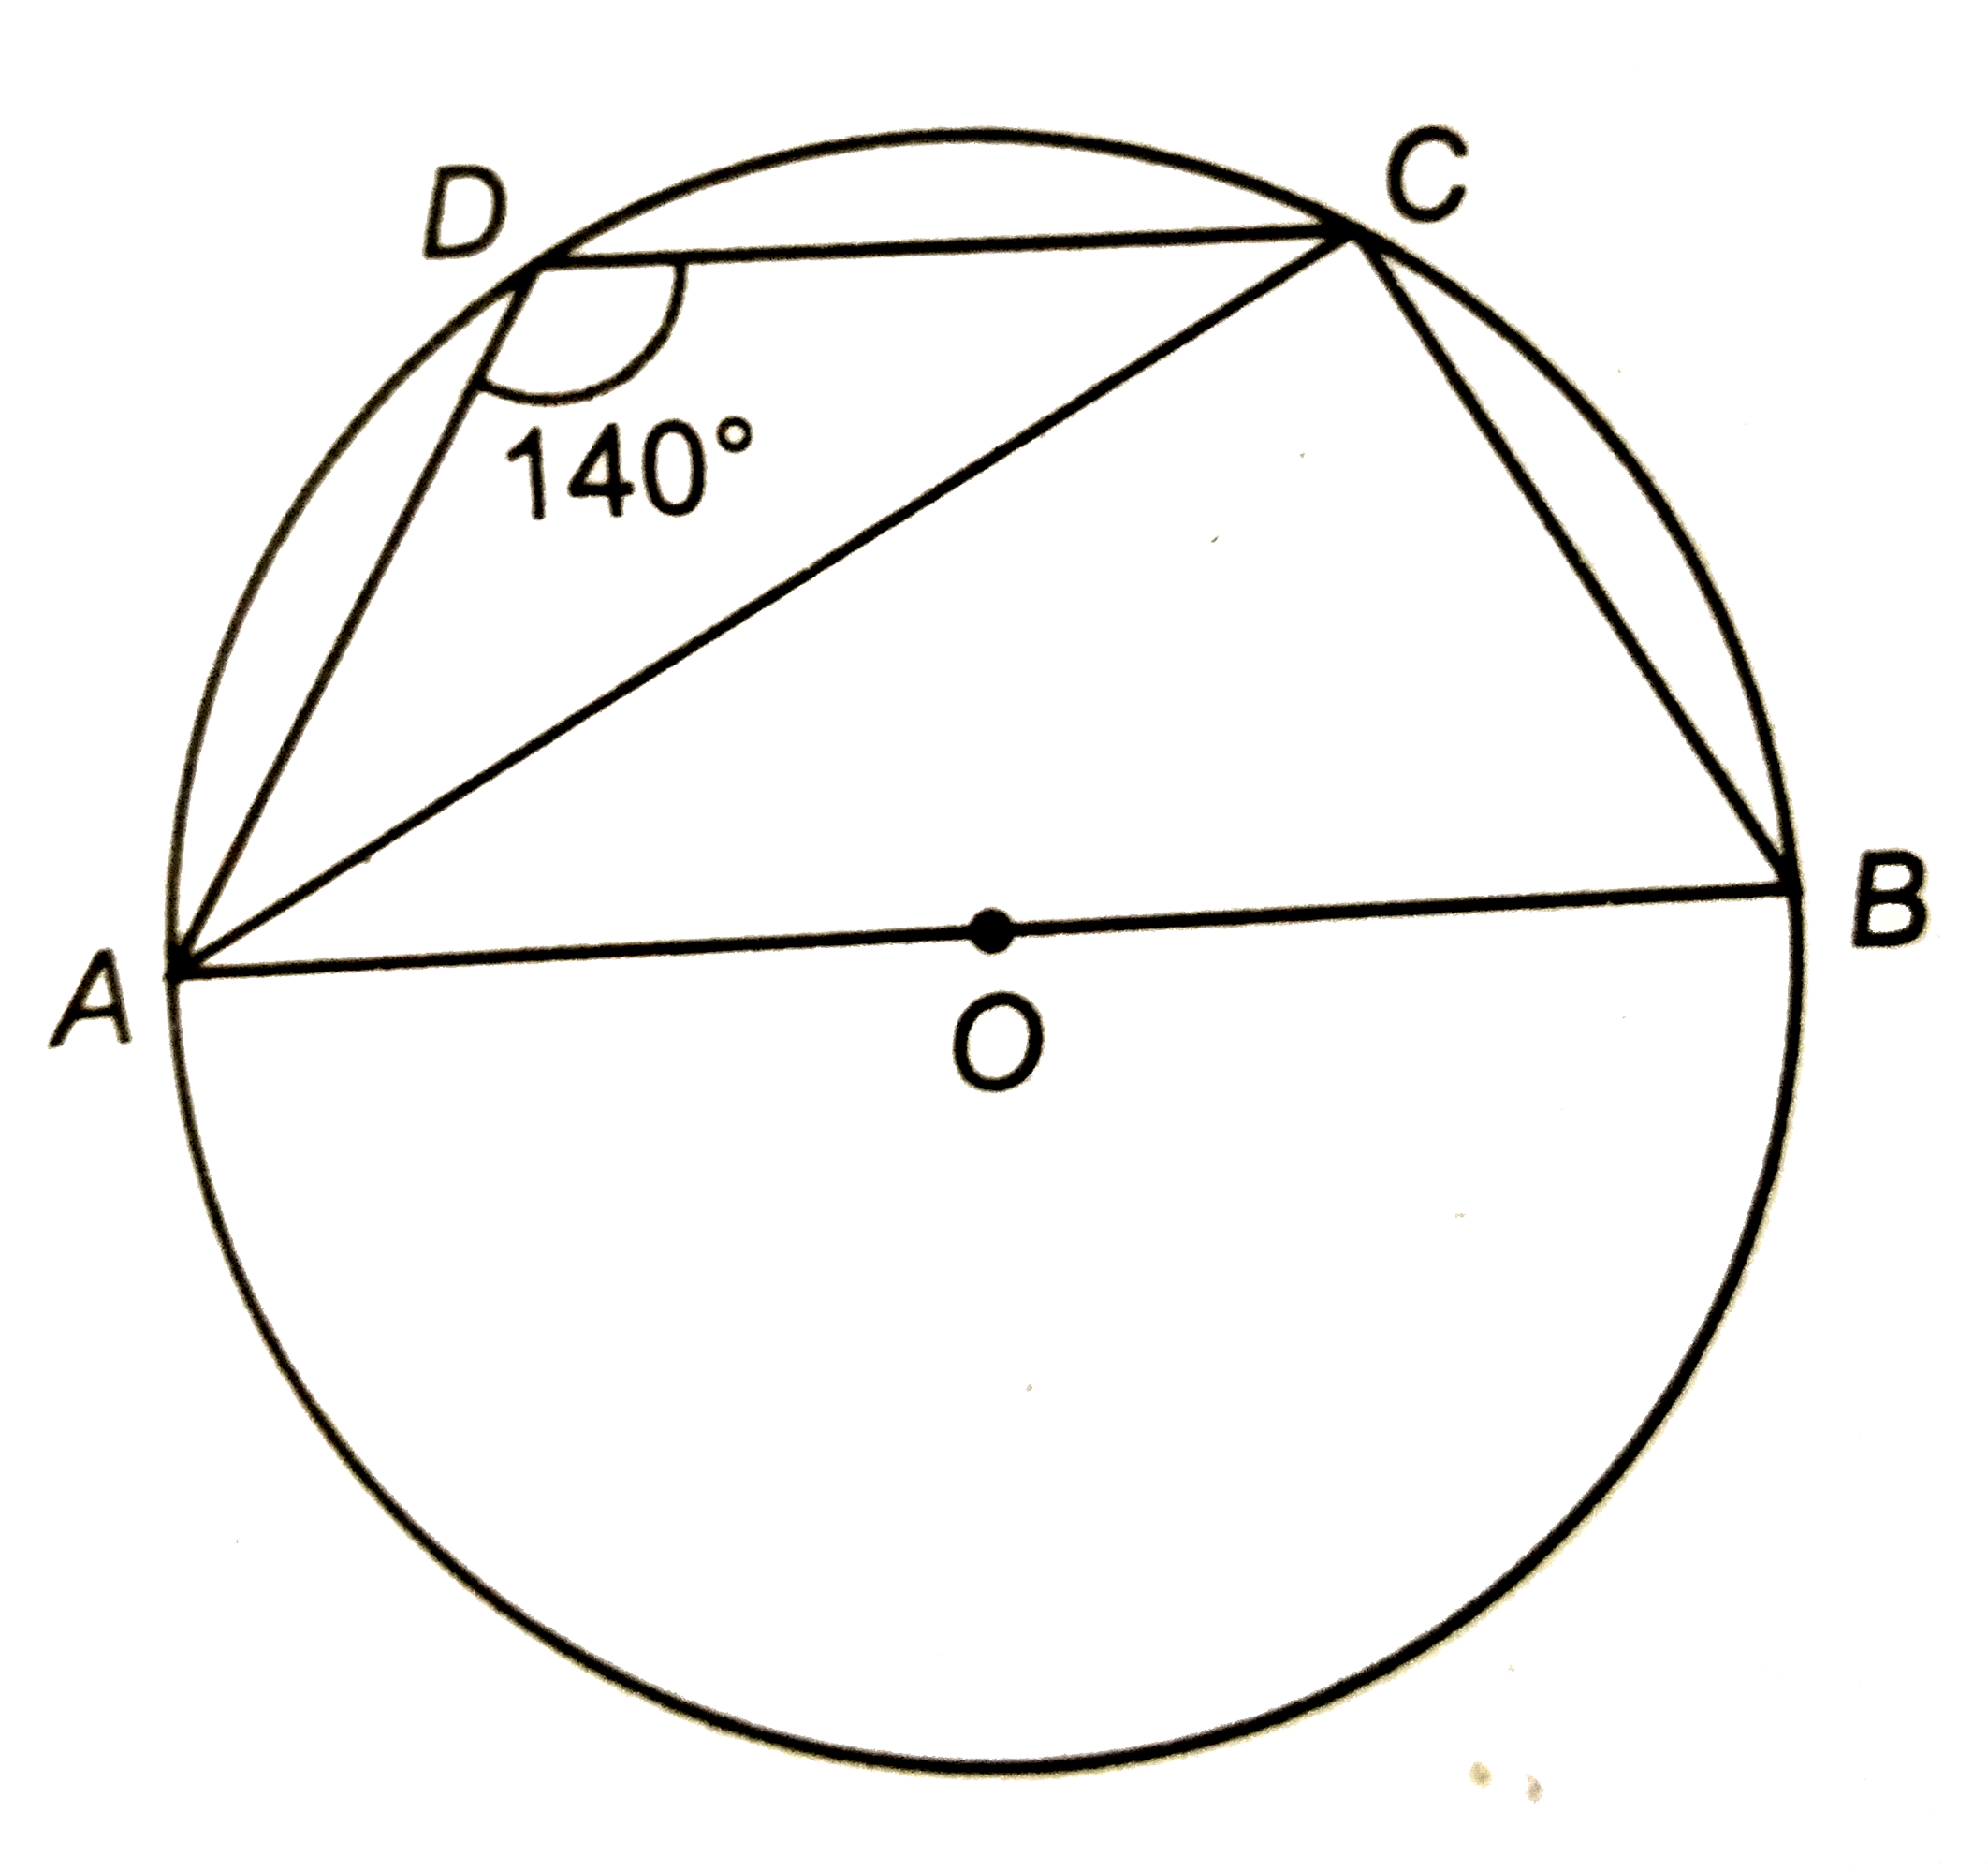 संलग्न चित्र में, ABCD एक चक्रीय चतुर्भुज है जिसकी भुजा AB वृत्त का एक व्यास है | यदि angleADC=140^(@), तो angleBAC का मान ज्ञात कीजिए |